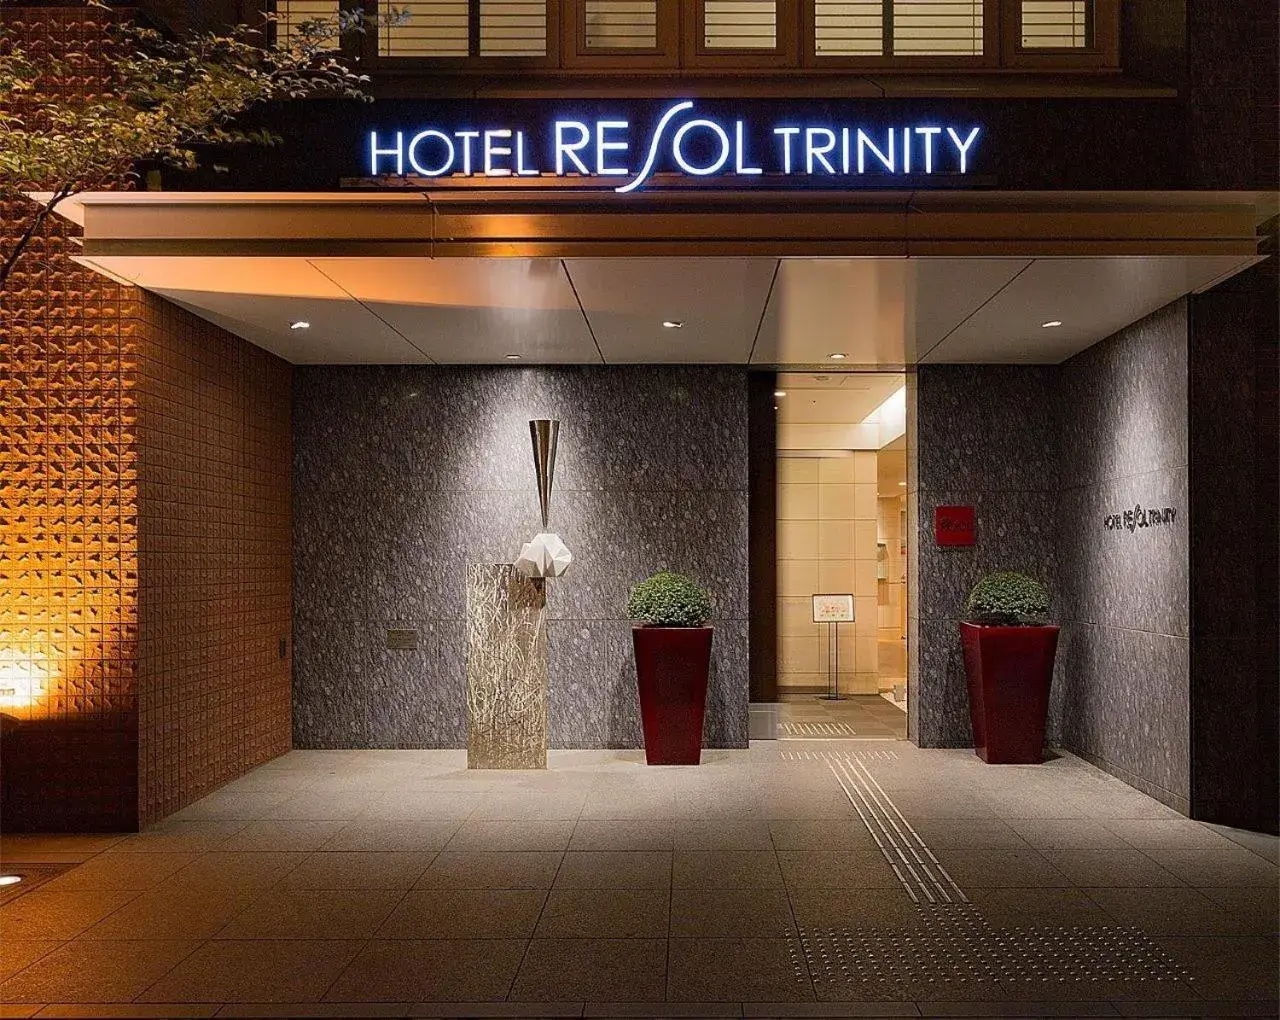 Facade/entrance in Hotel Resol Trinity Sapporo